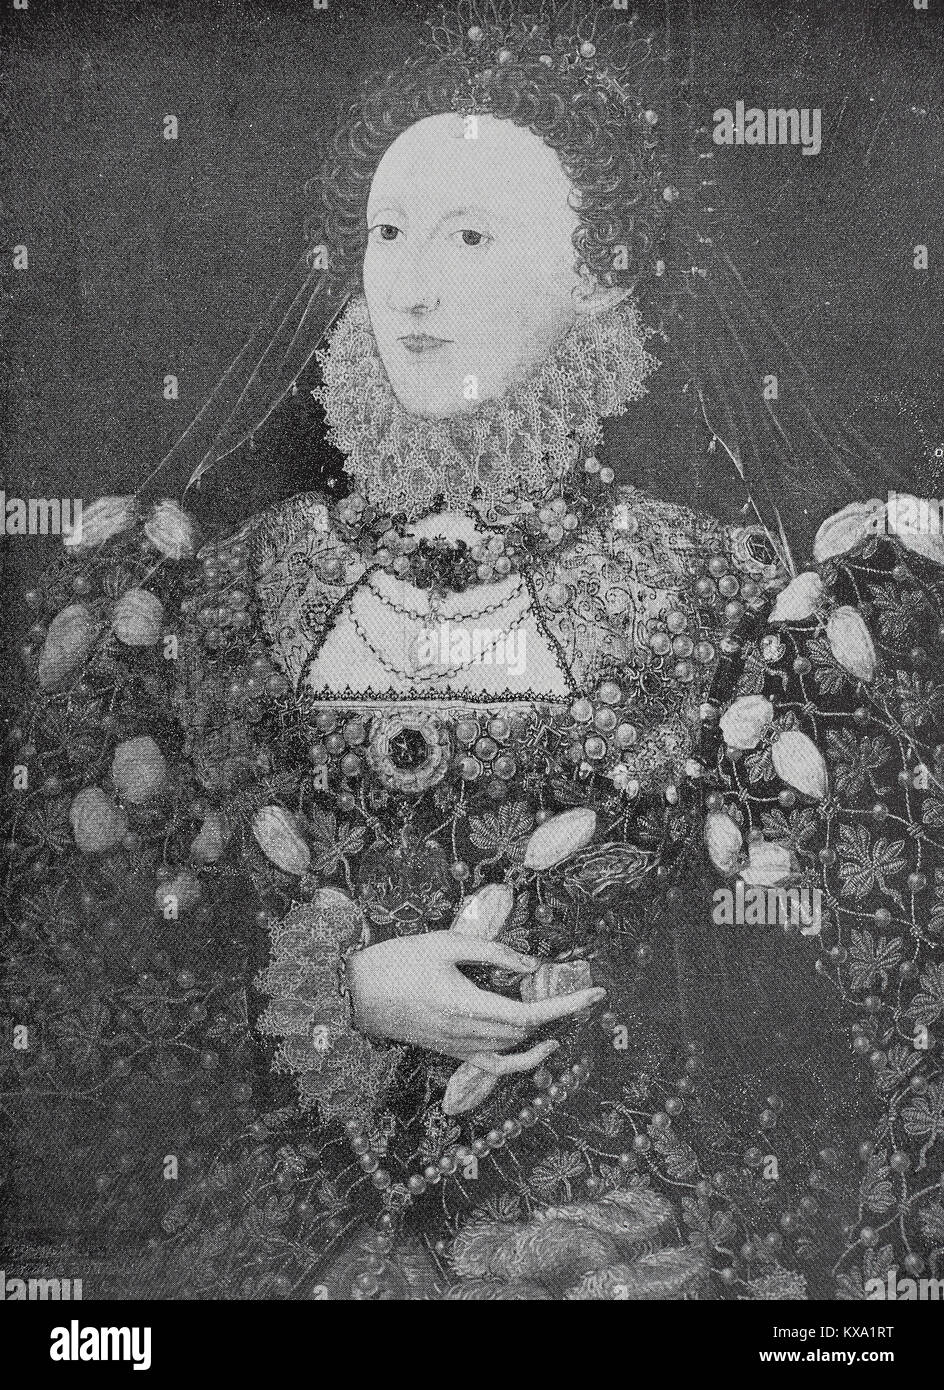 Elizabeth I, el 7 de septiembre de 1533 - 24 de marzo de 1603, era la reina de Inglaterra e Irlanda desde el 17 de noviembre de 1558, hasta su muerte el 24 de marzo de 1603. A veces se denomina la reina virgen, Gloriana o Buena Reina Bess, pintura después de una fotografía original por Walter & Boutall en Londres, Inglaterra, mejor reproducción digital de un original xilografía o ilustración desde el año 1880 Foto de stock